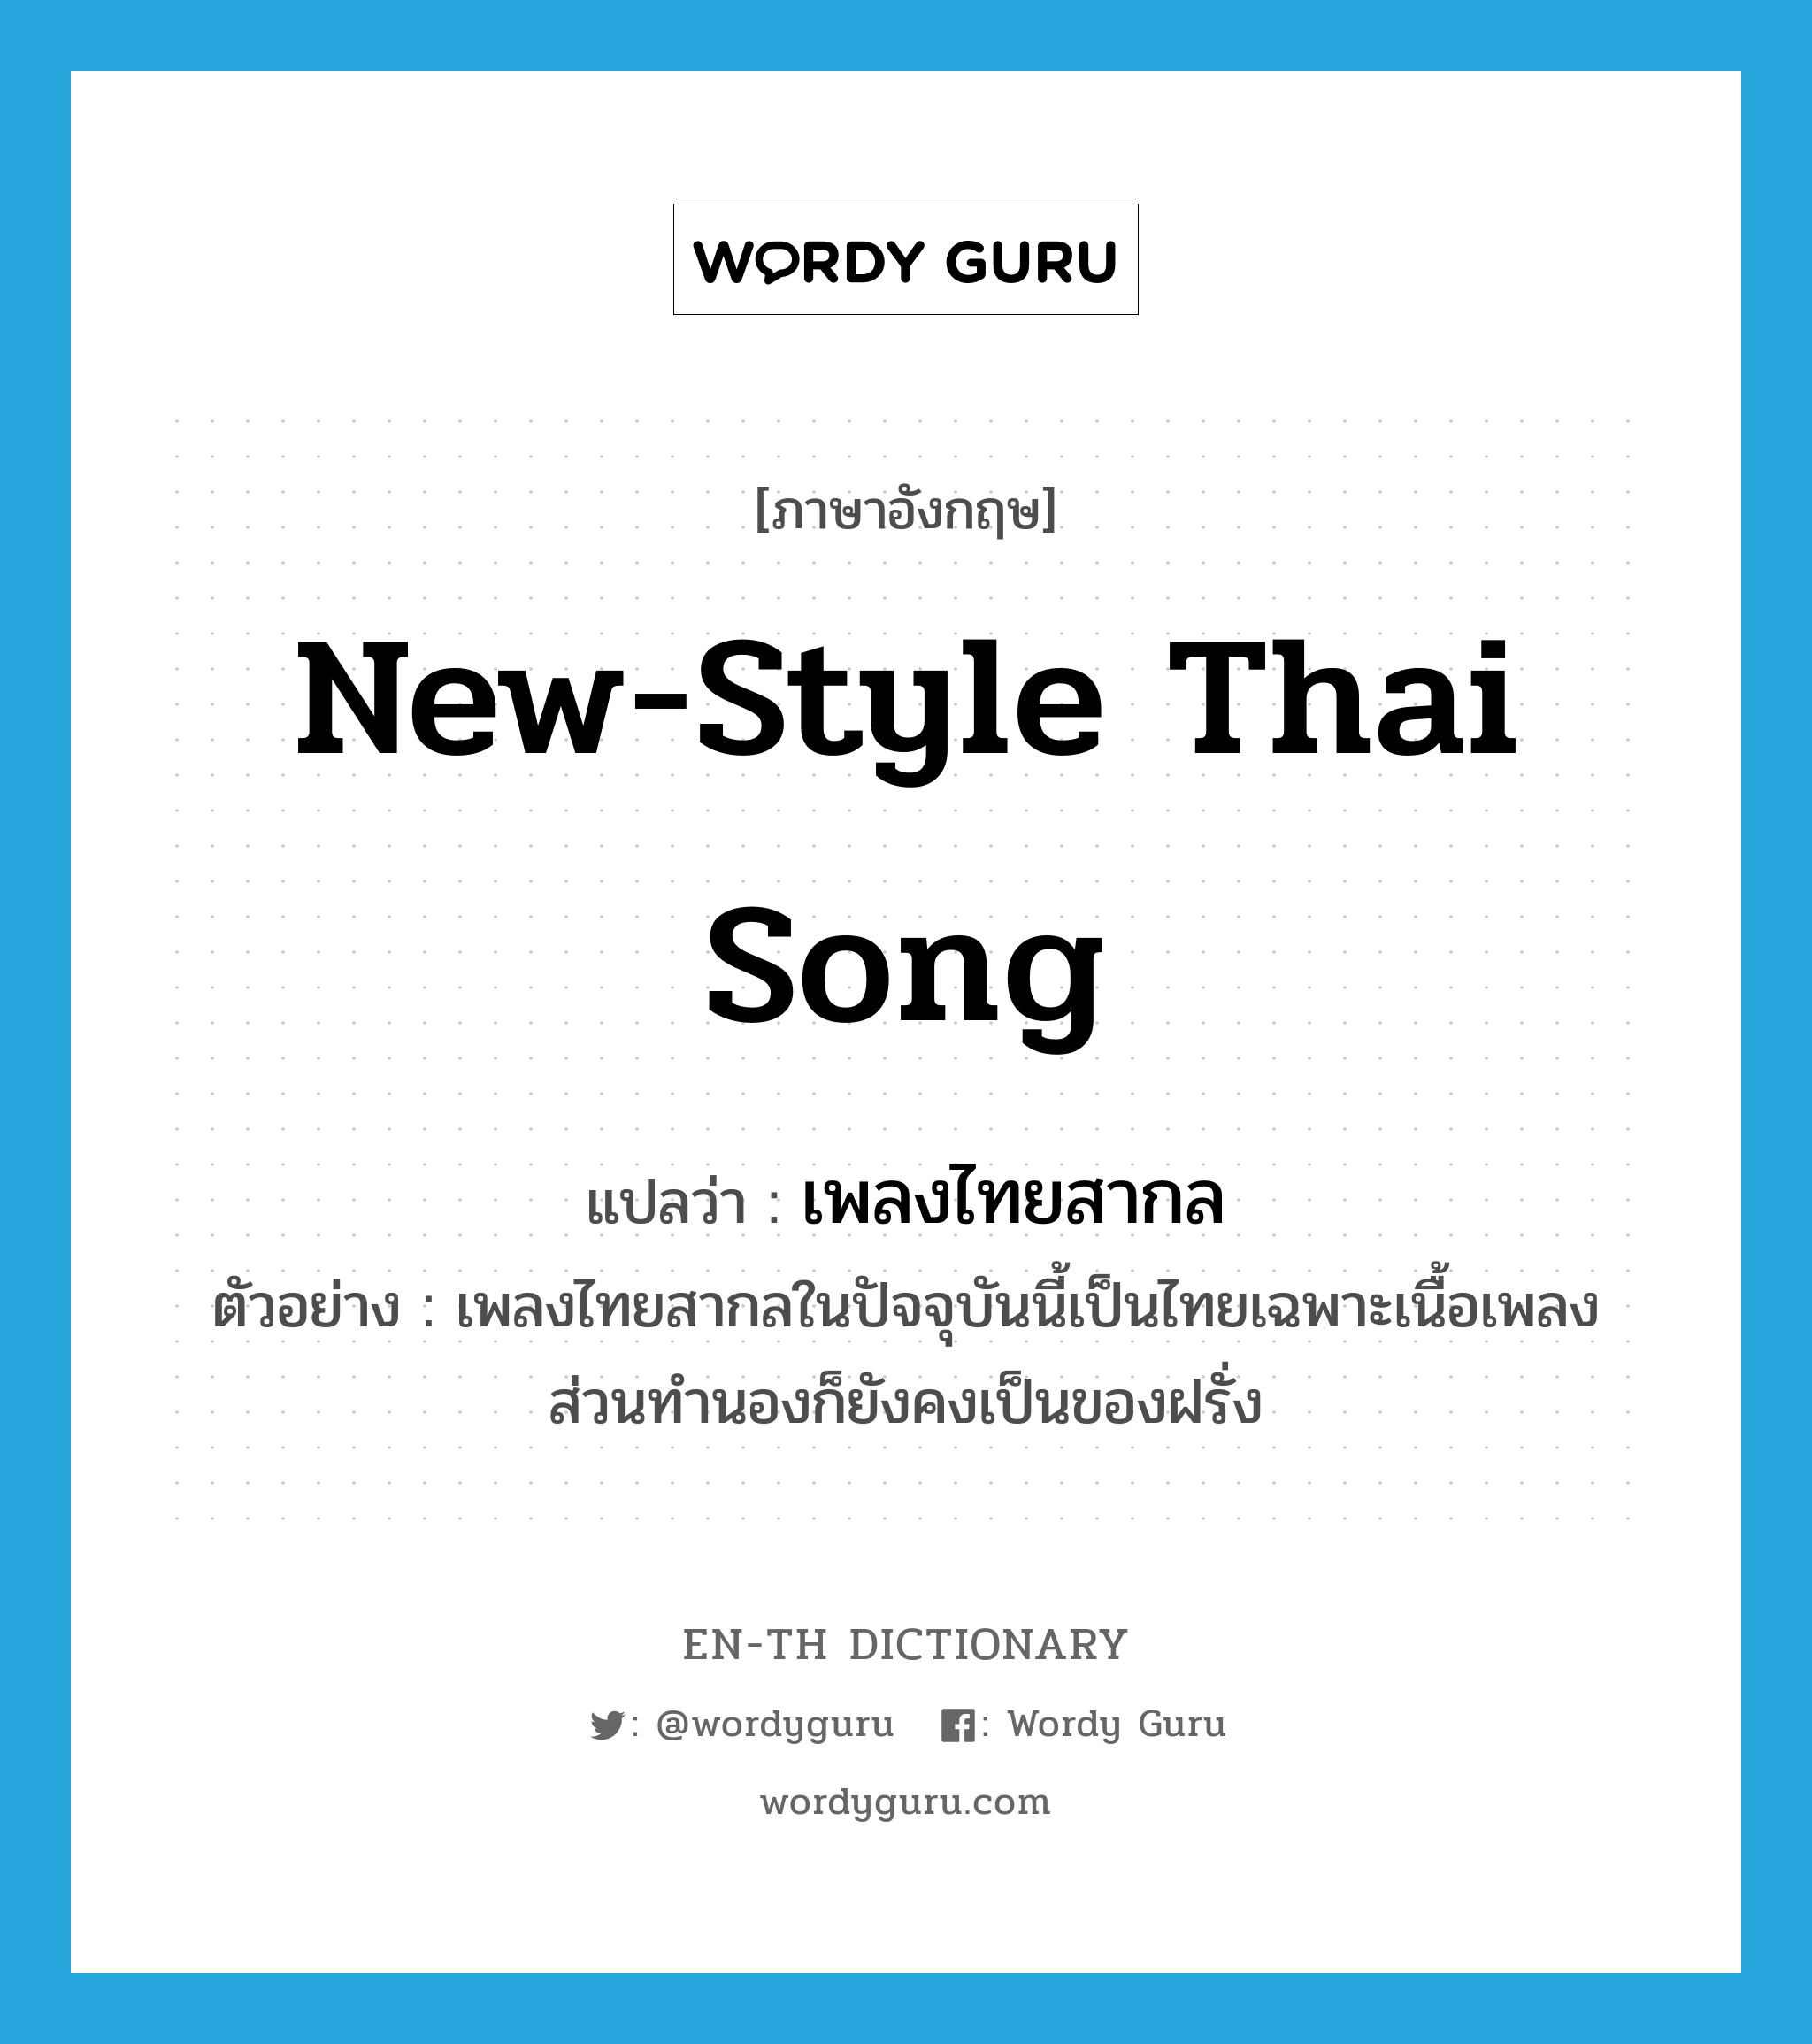 เพลงไทยสากล ภาษาอังกฤษ?, คำศัพท์ภาษาอังกฤษ เพลงไทยสากล แปลว่า new-style Thai song ประเภท N ตัวอย่าง เพลงไทยสากลในปัจจุบันนี้เป็นไทยเฉพาะเนื้อเพลง ส่วนทำนองก็ยังคงเป็นของฝรั่ง หมวด N